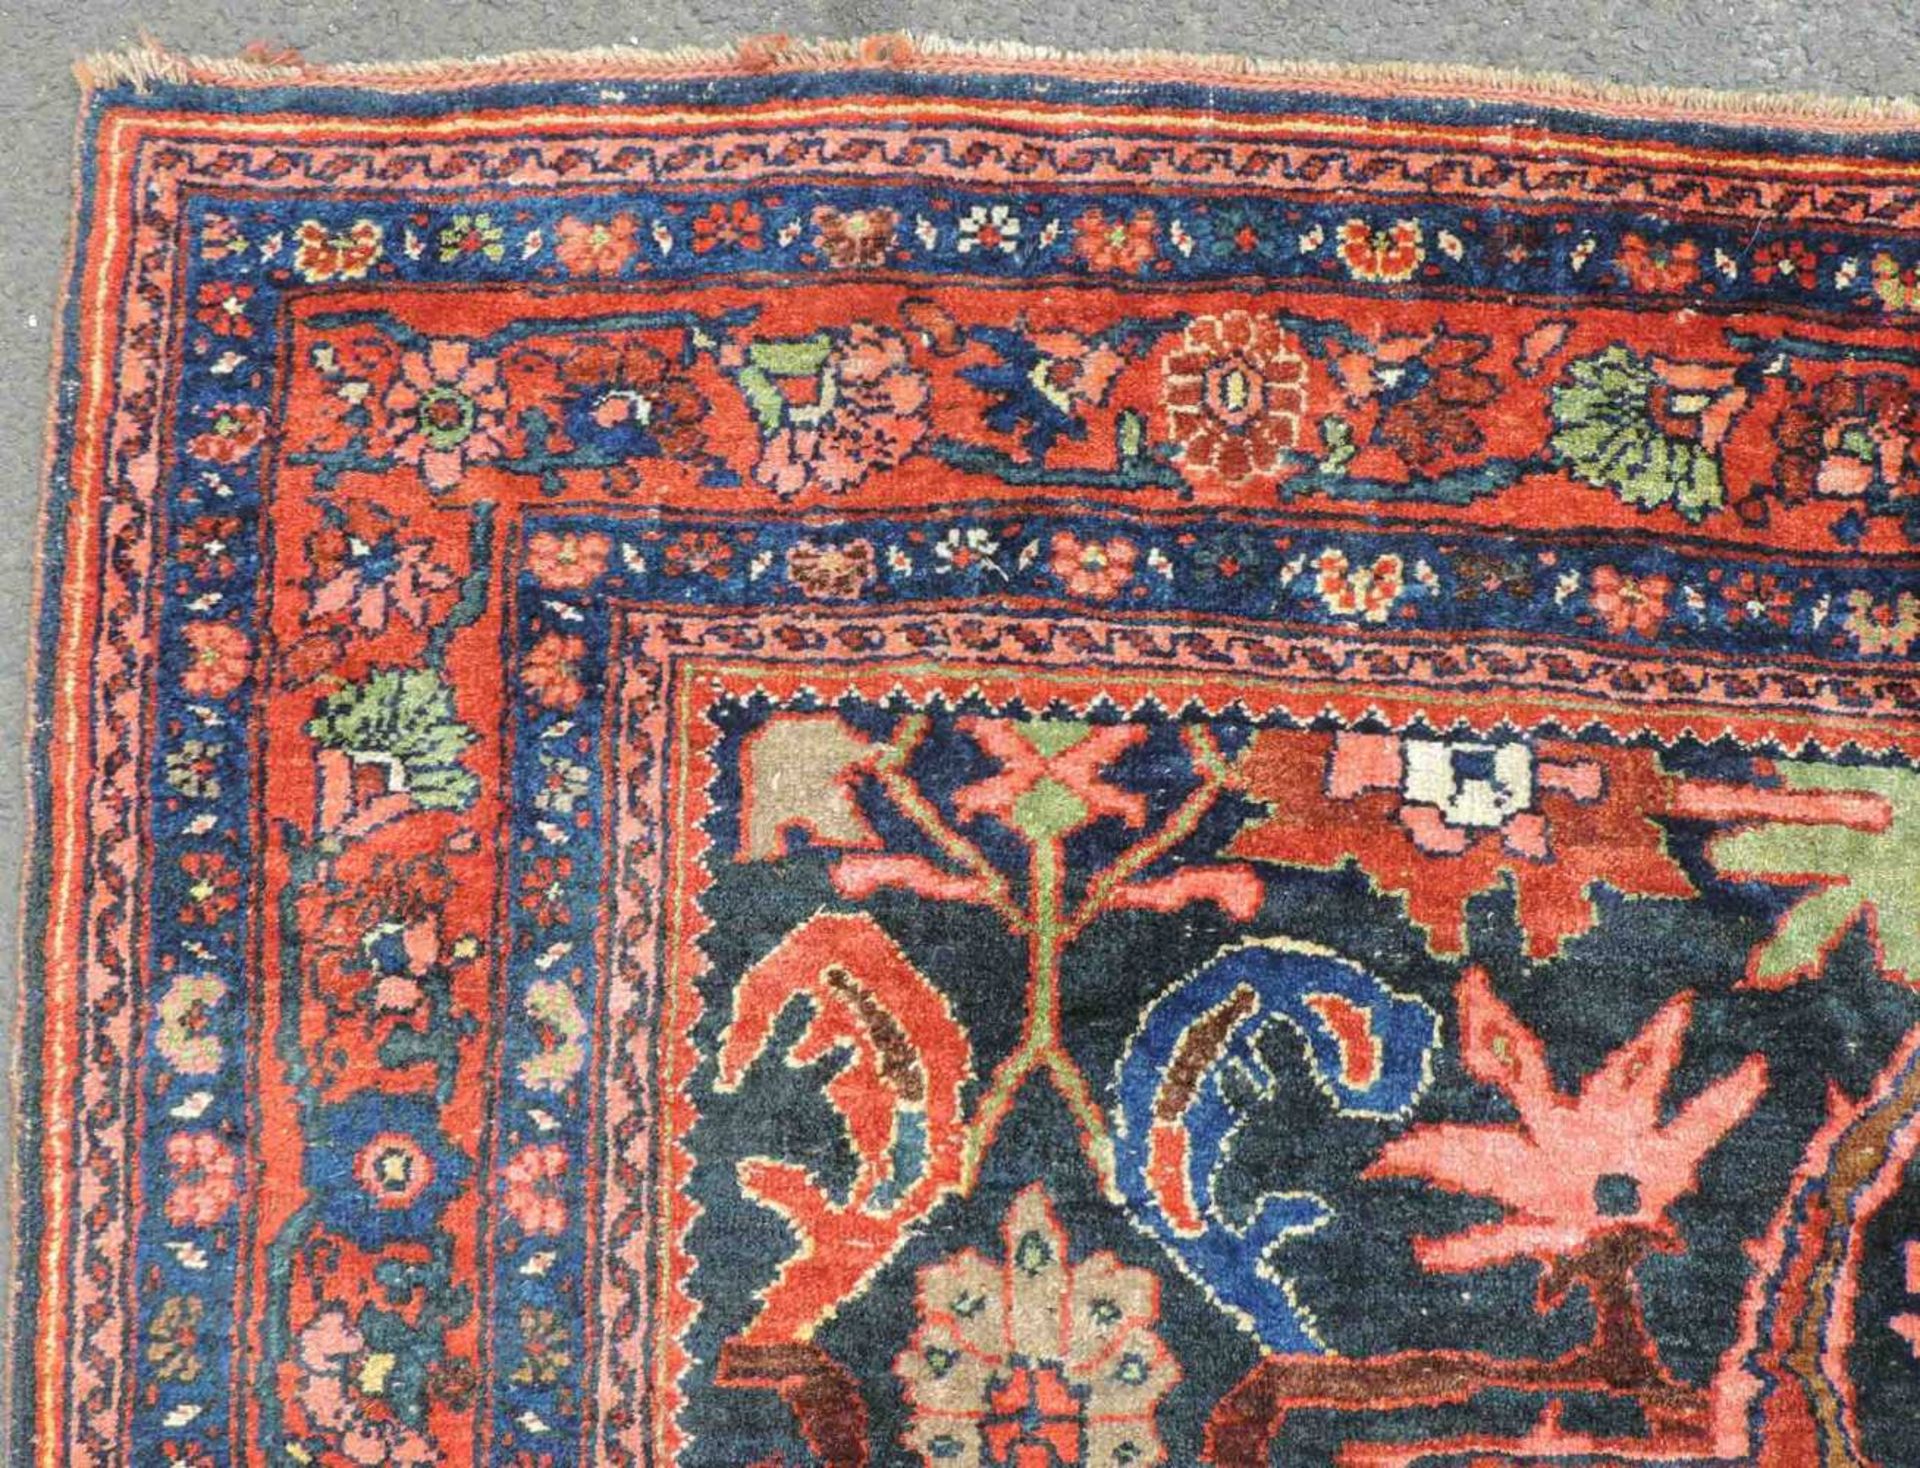 Bidjar Dorfteppich, Iran. Antik, um 1900. 214 cm x 160 cm. Handgeknüpft in Persien. Noch Wolle auf - Image 7 of 11